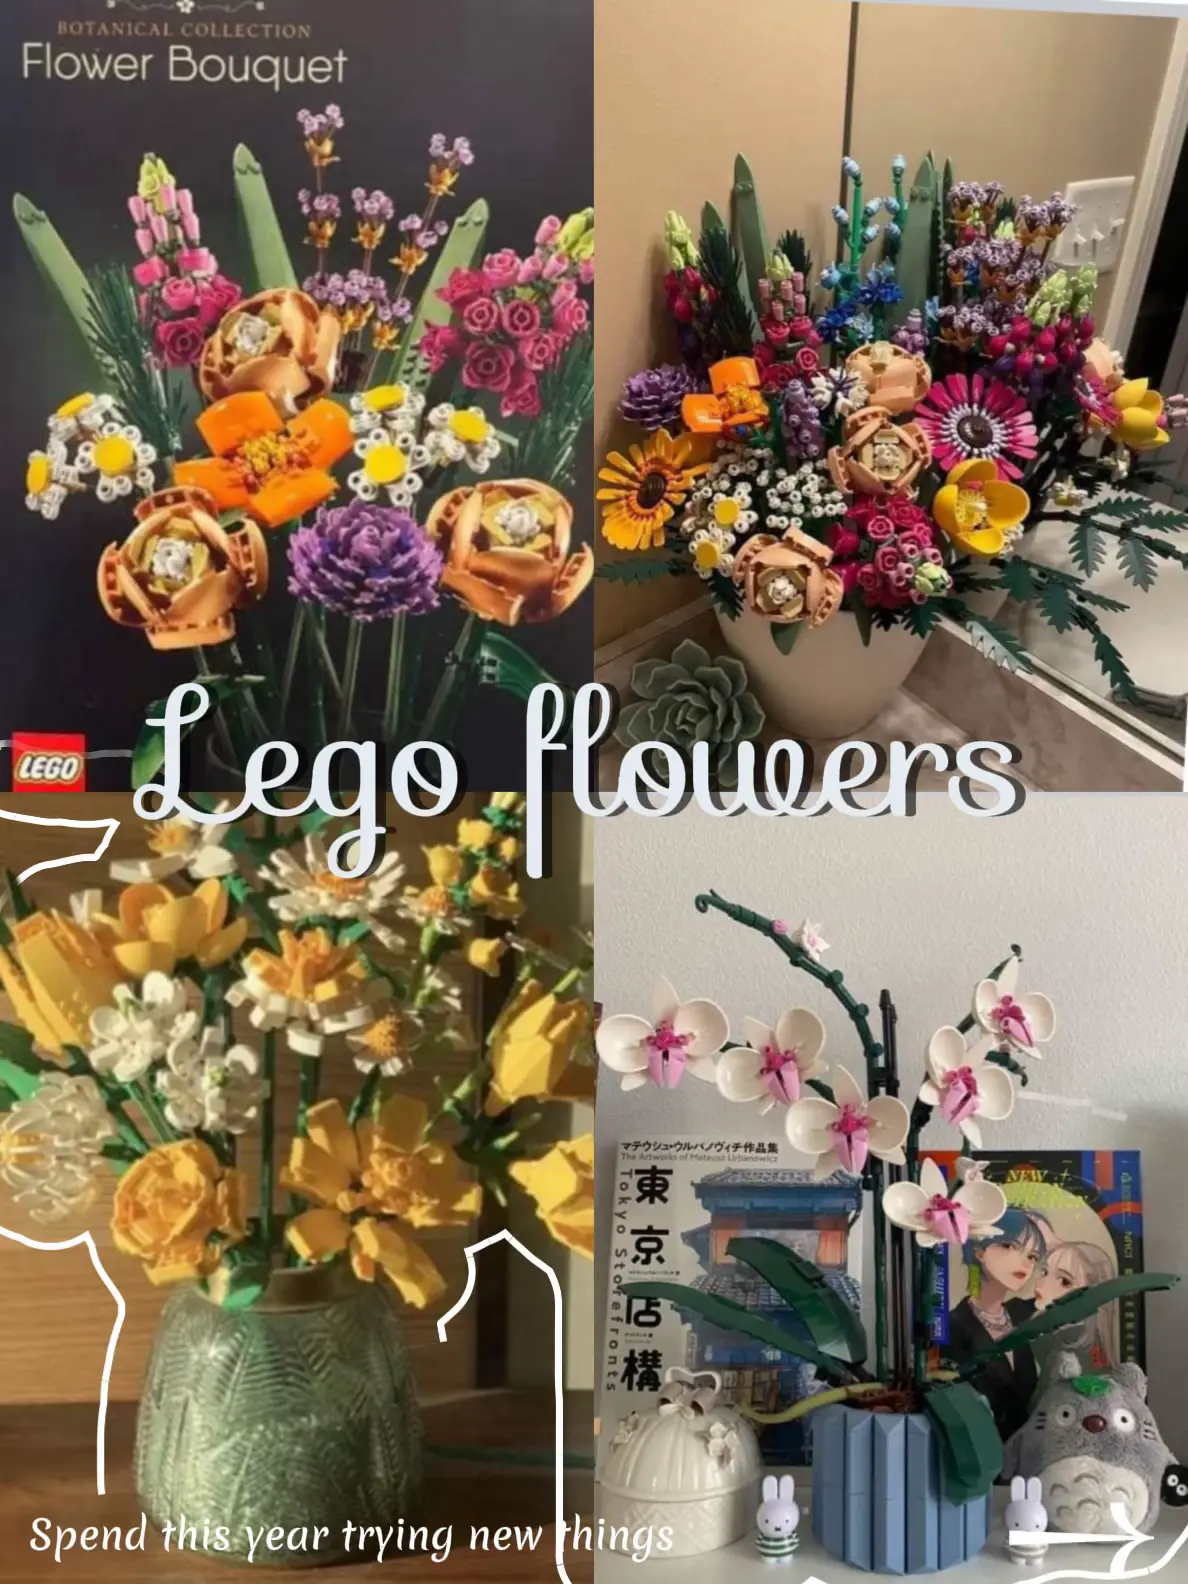 Rose gold lego flower - Lemon8 Search